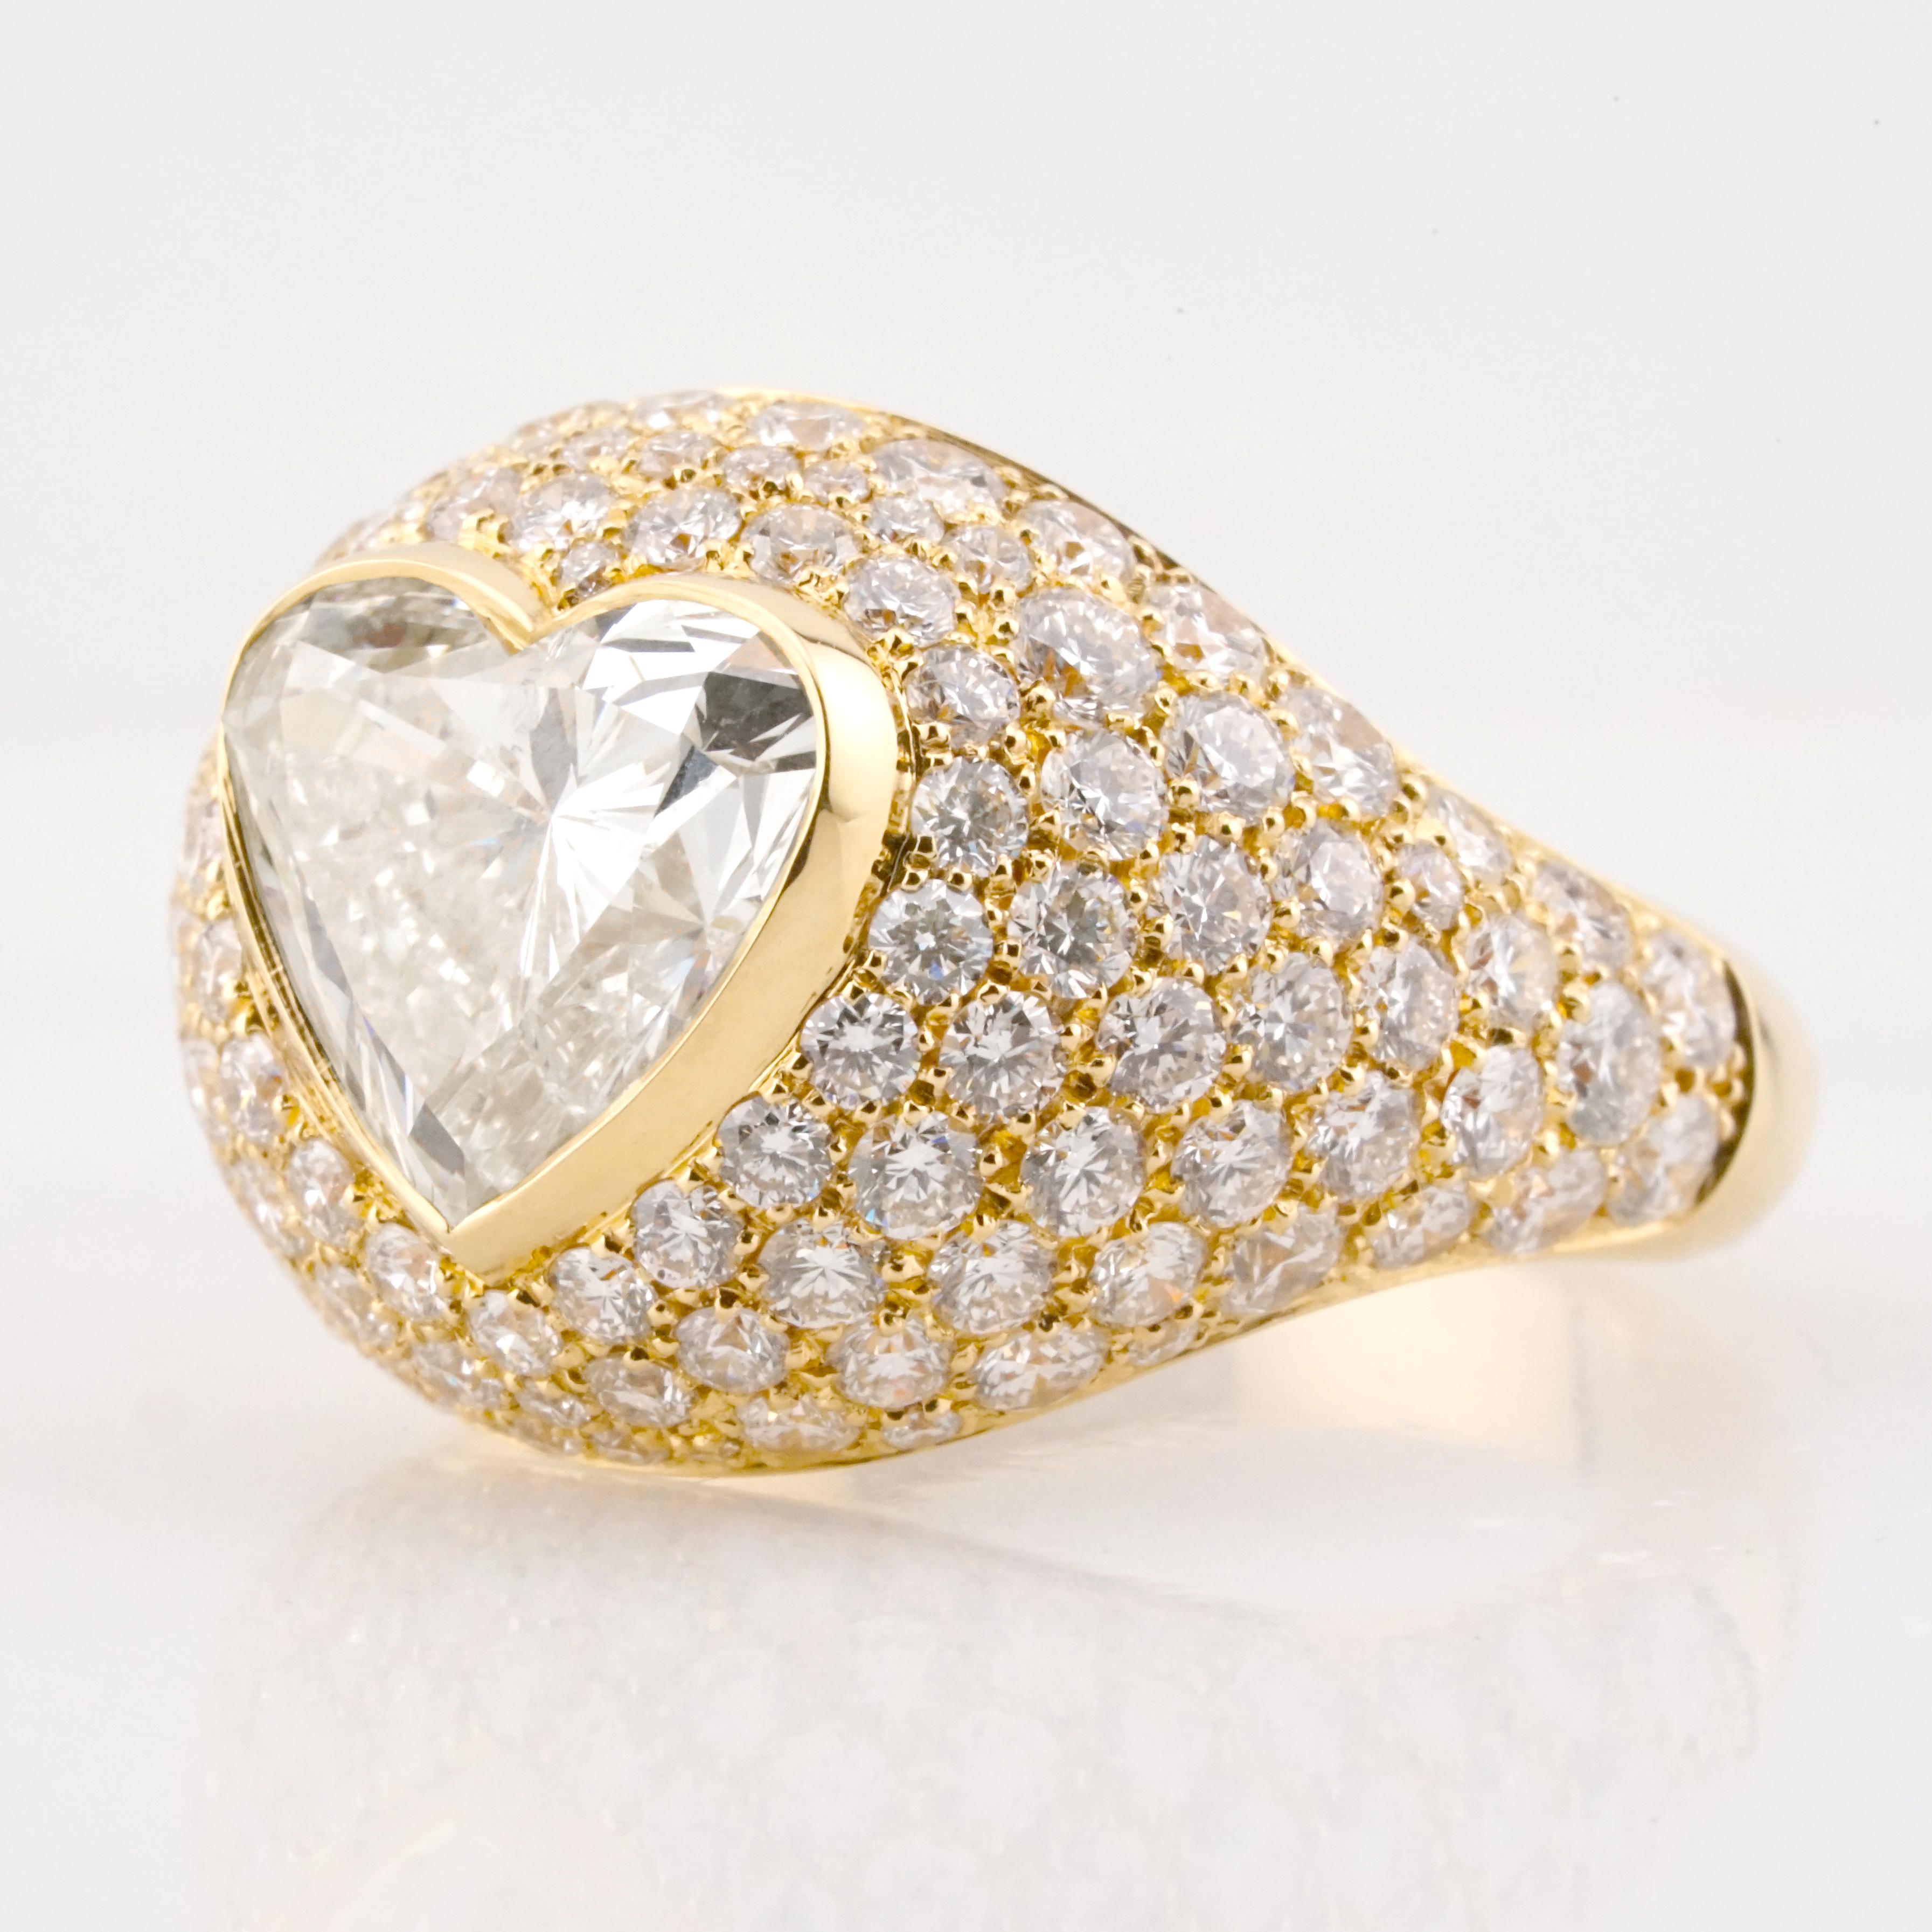 Cette magnifique bague en or jaune 18 carats est couronnée d'un diamant en forme de cœur de 2,74 carats qui rayonne d'un éclat ardent, symbole même de l'amour et de la dévotion. 

Certifié par le Gemological Institute of America (GIA), la pureté du